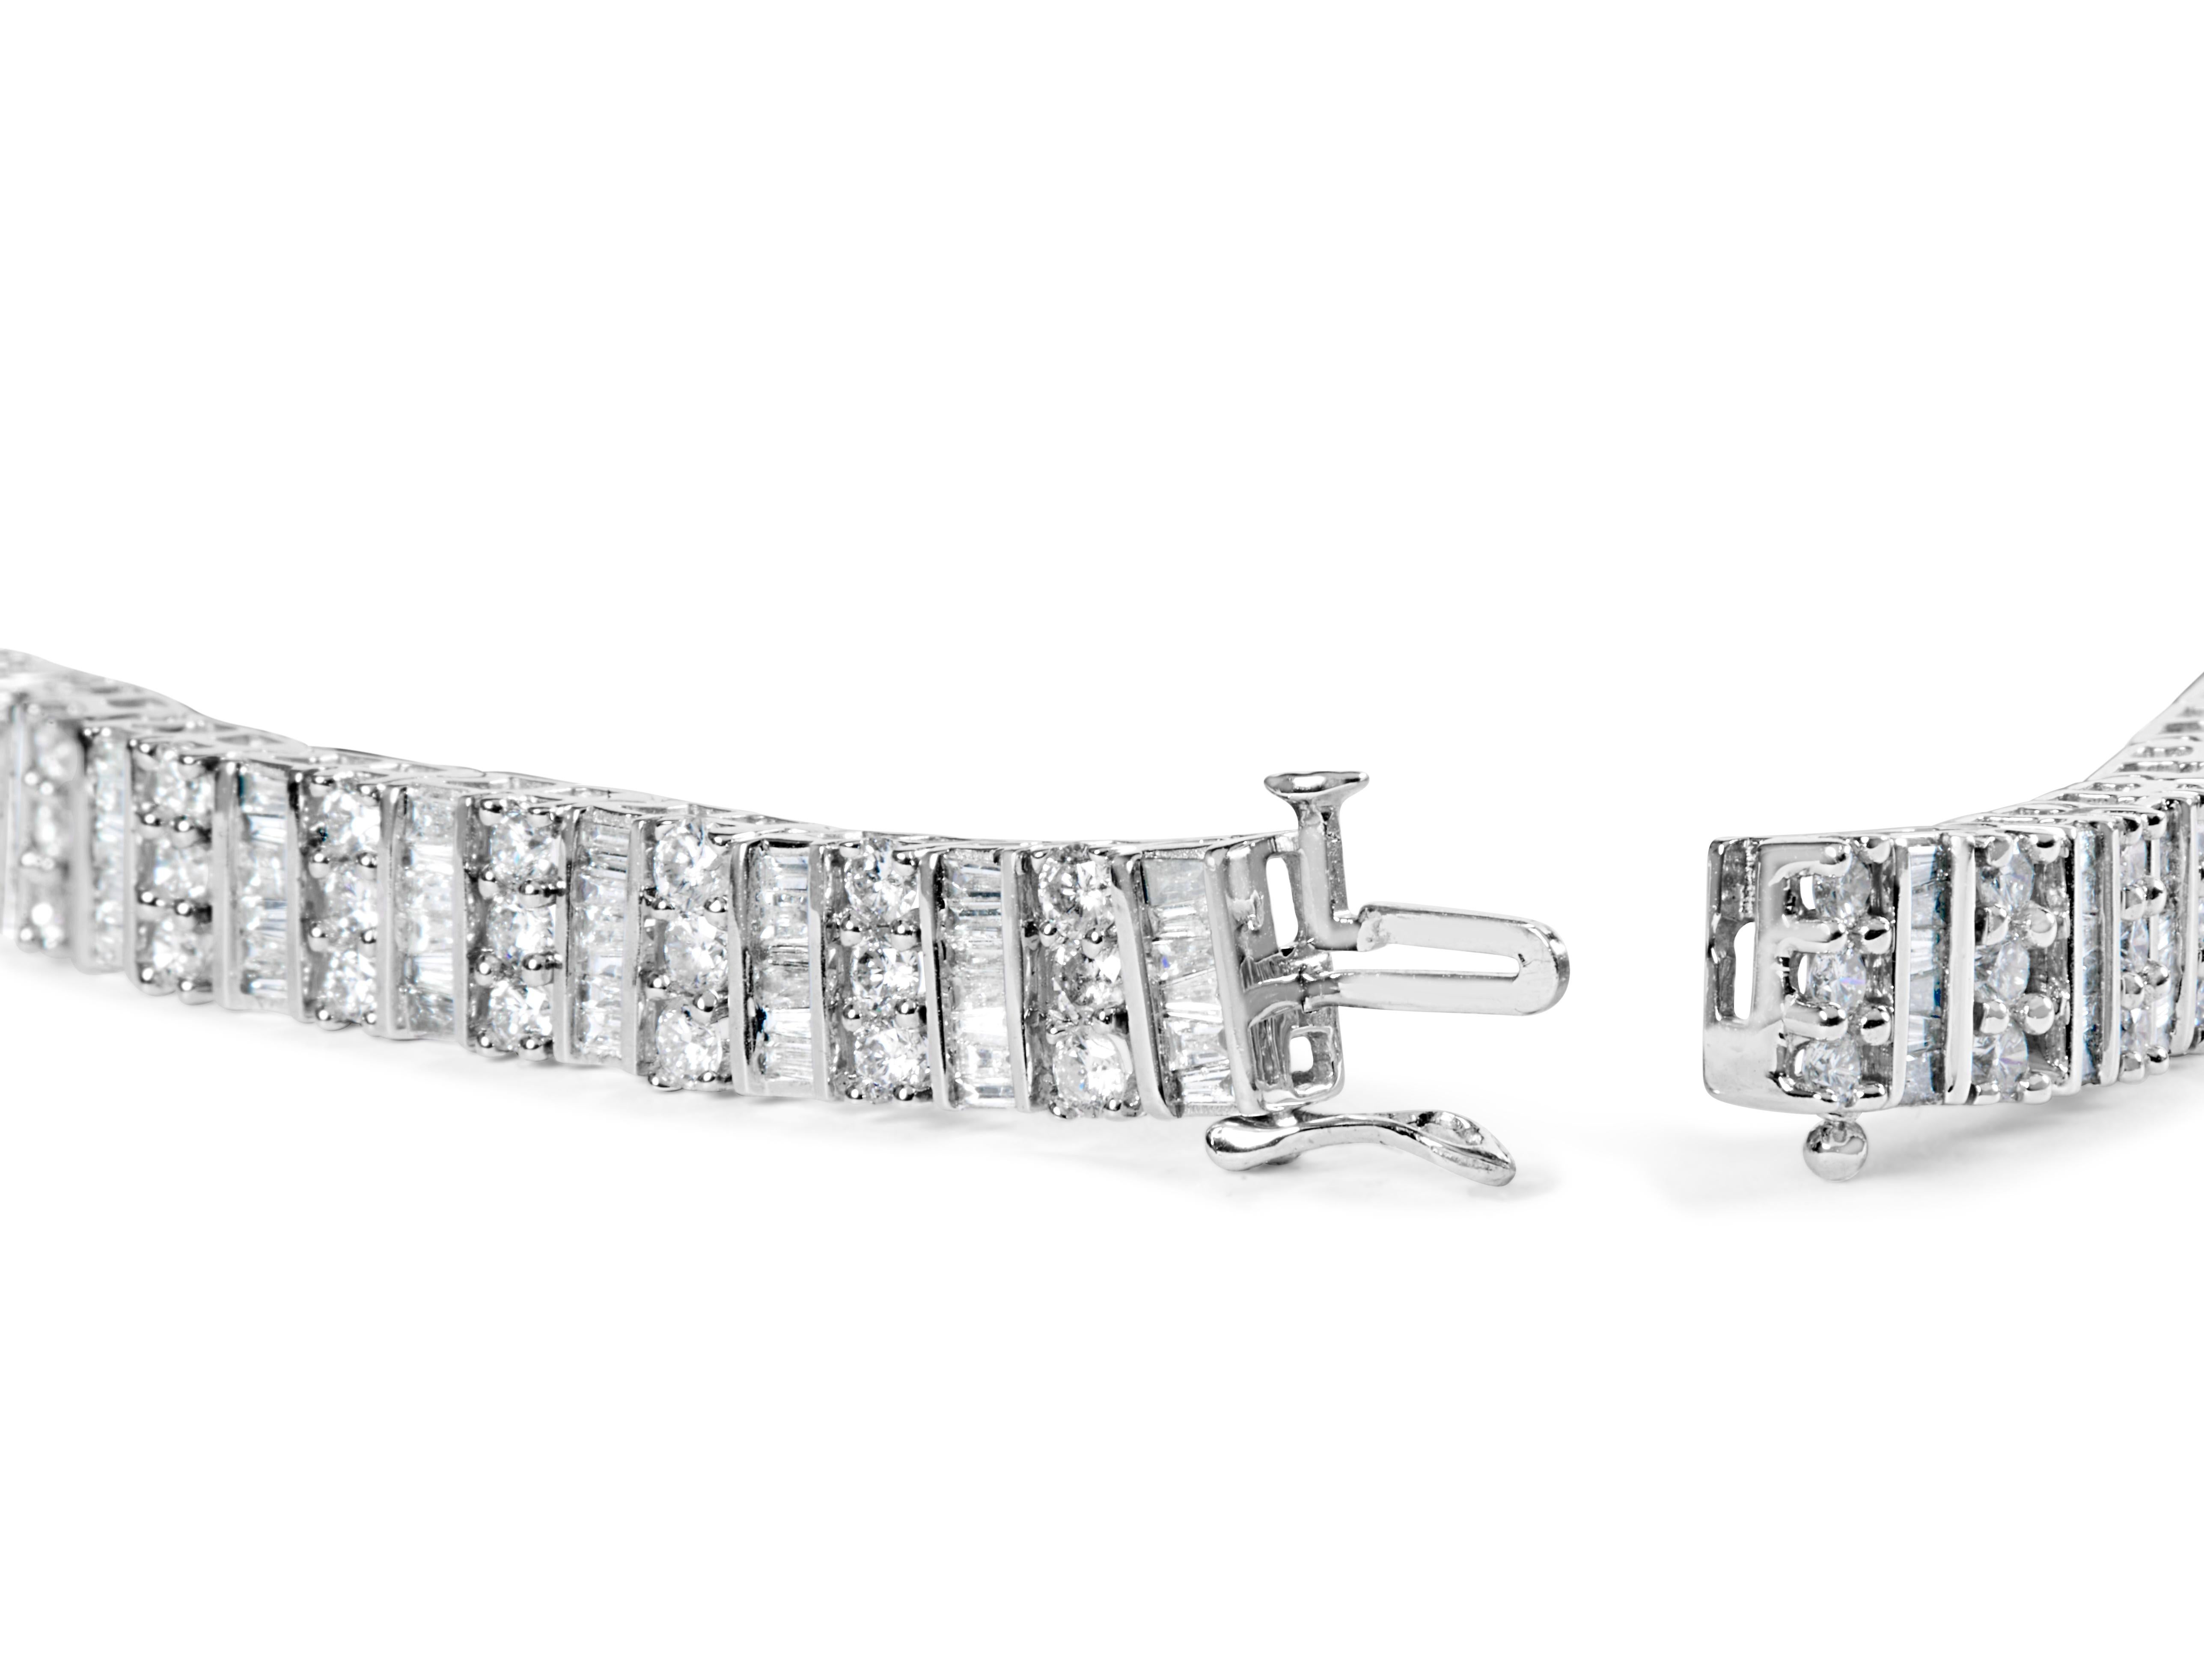 Enveloppez votre poignet de l'élégance pure de ce bracelet de tennis en or blanc 14 carats à diamants, où le luxe s'entrelace en toute transparence avec l'harmonie géométrique. Dans une danse de lumière et de précision, des diamants baguettes et